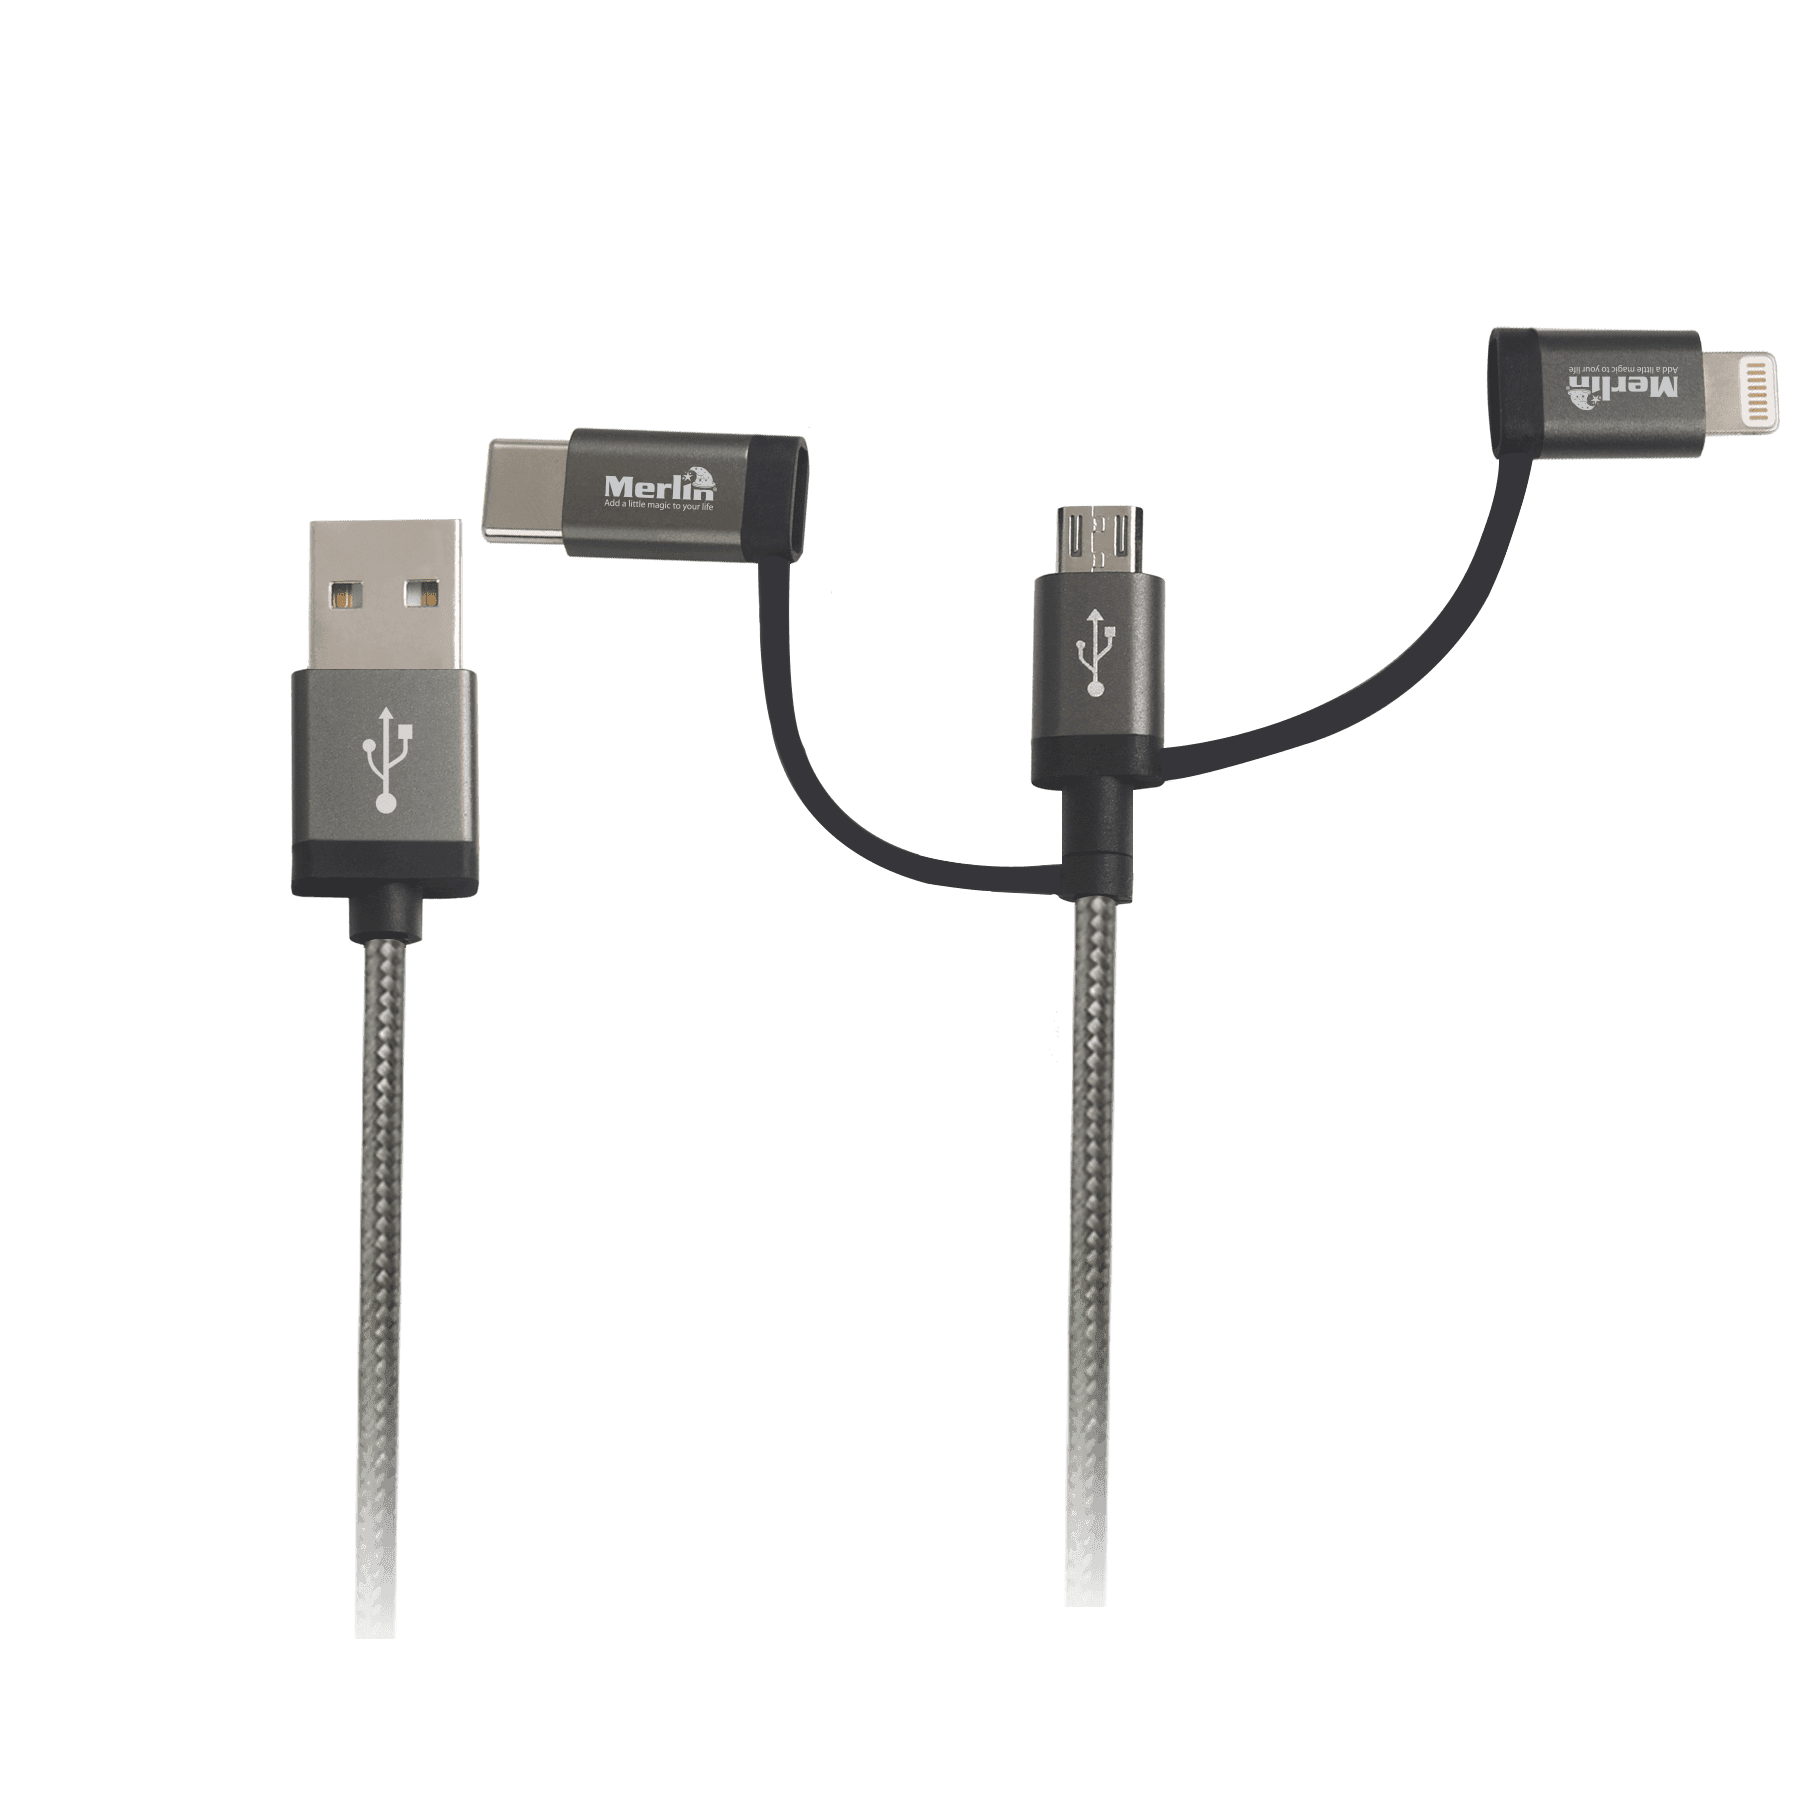 كيبل شحن 3 في 1 Merlin 3-in-1 Charge Cable Premium Edition